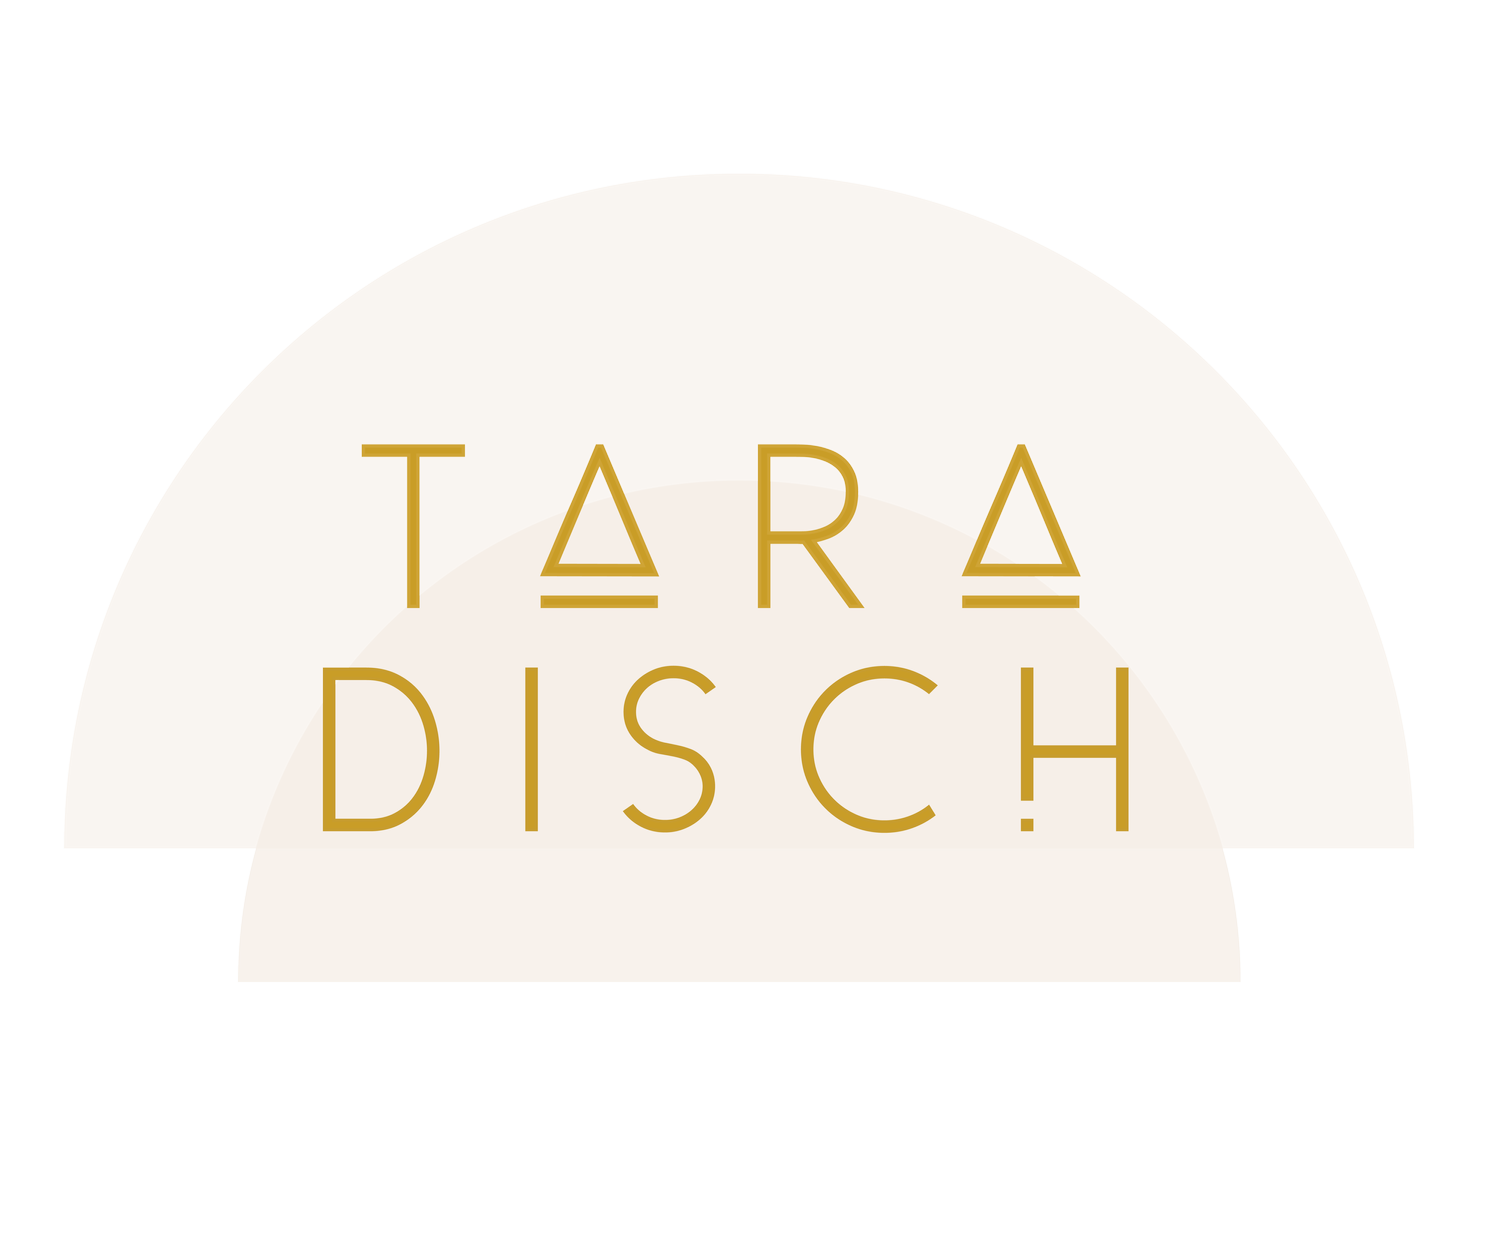 Tara Disch